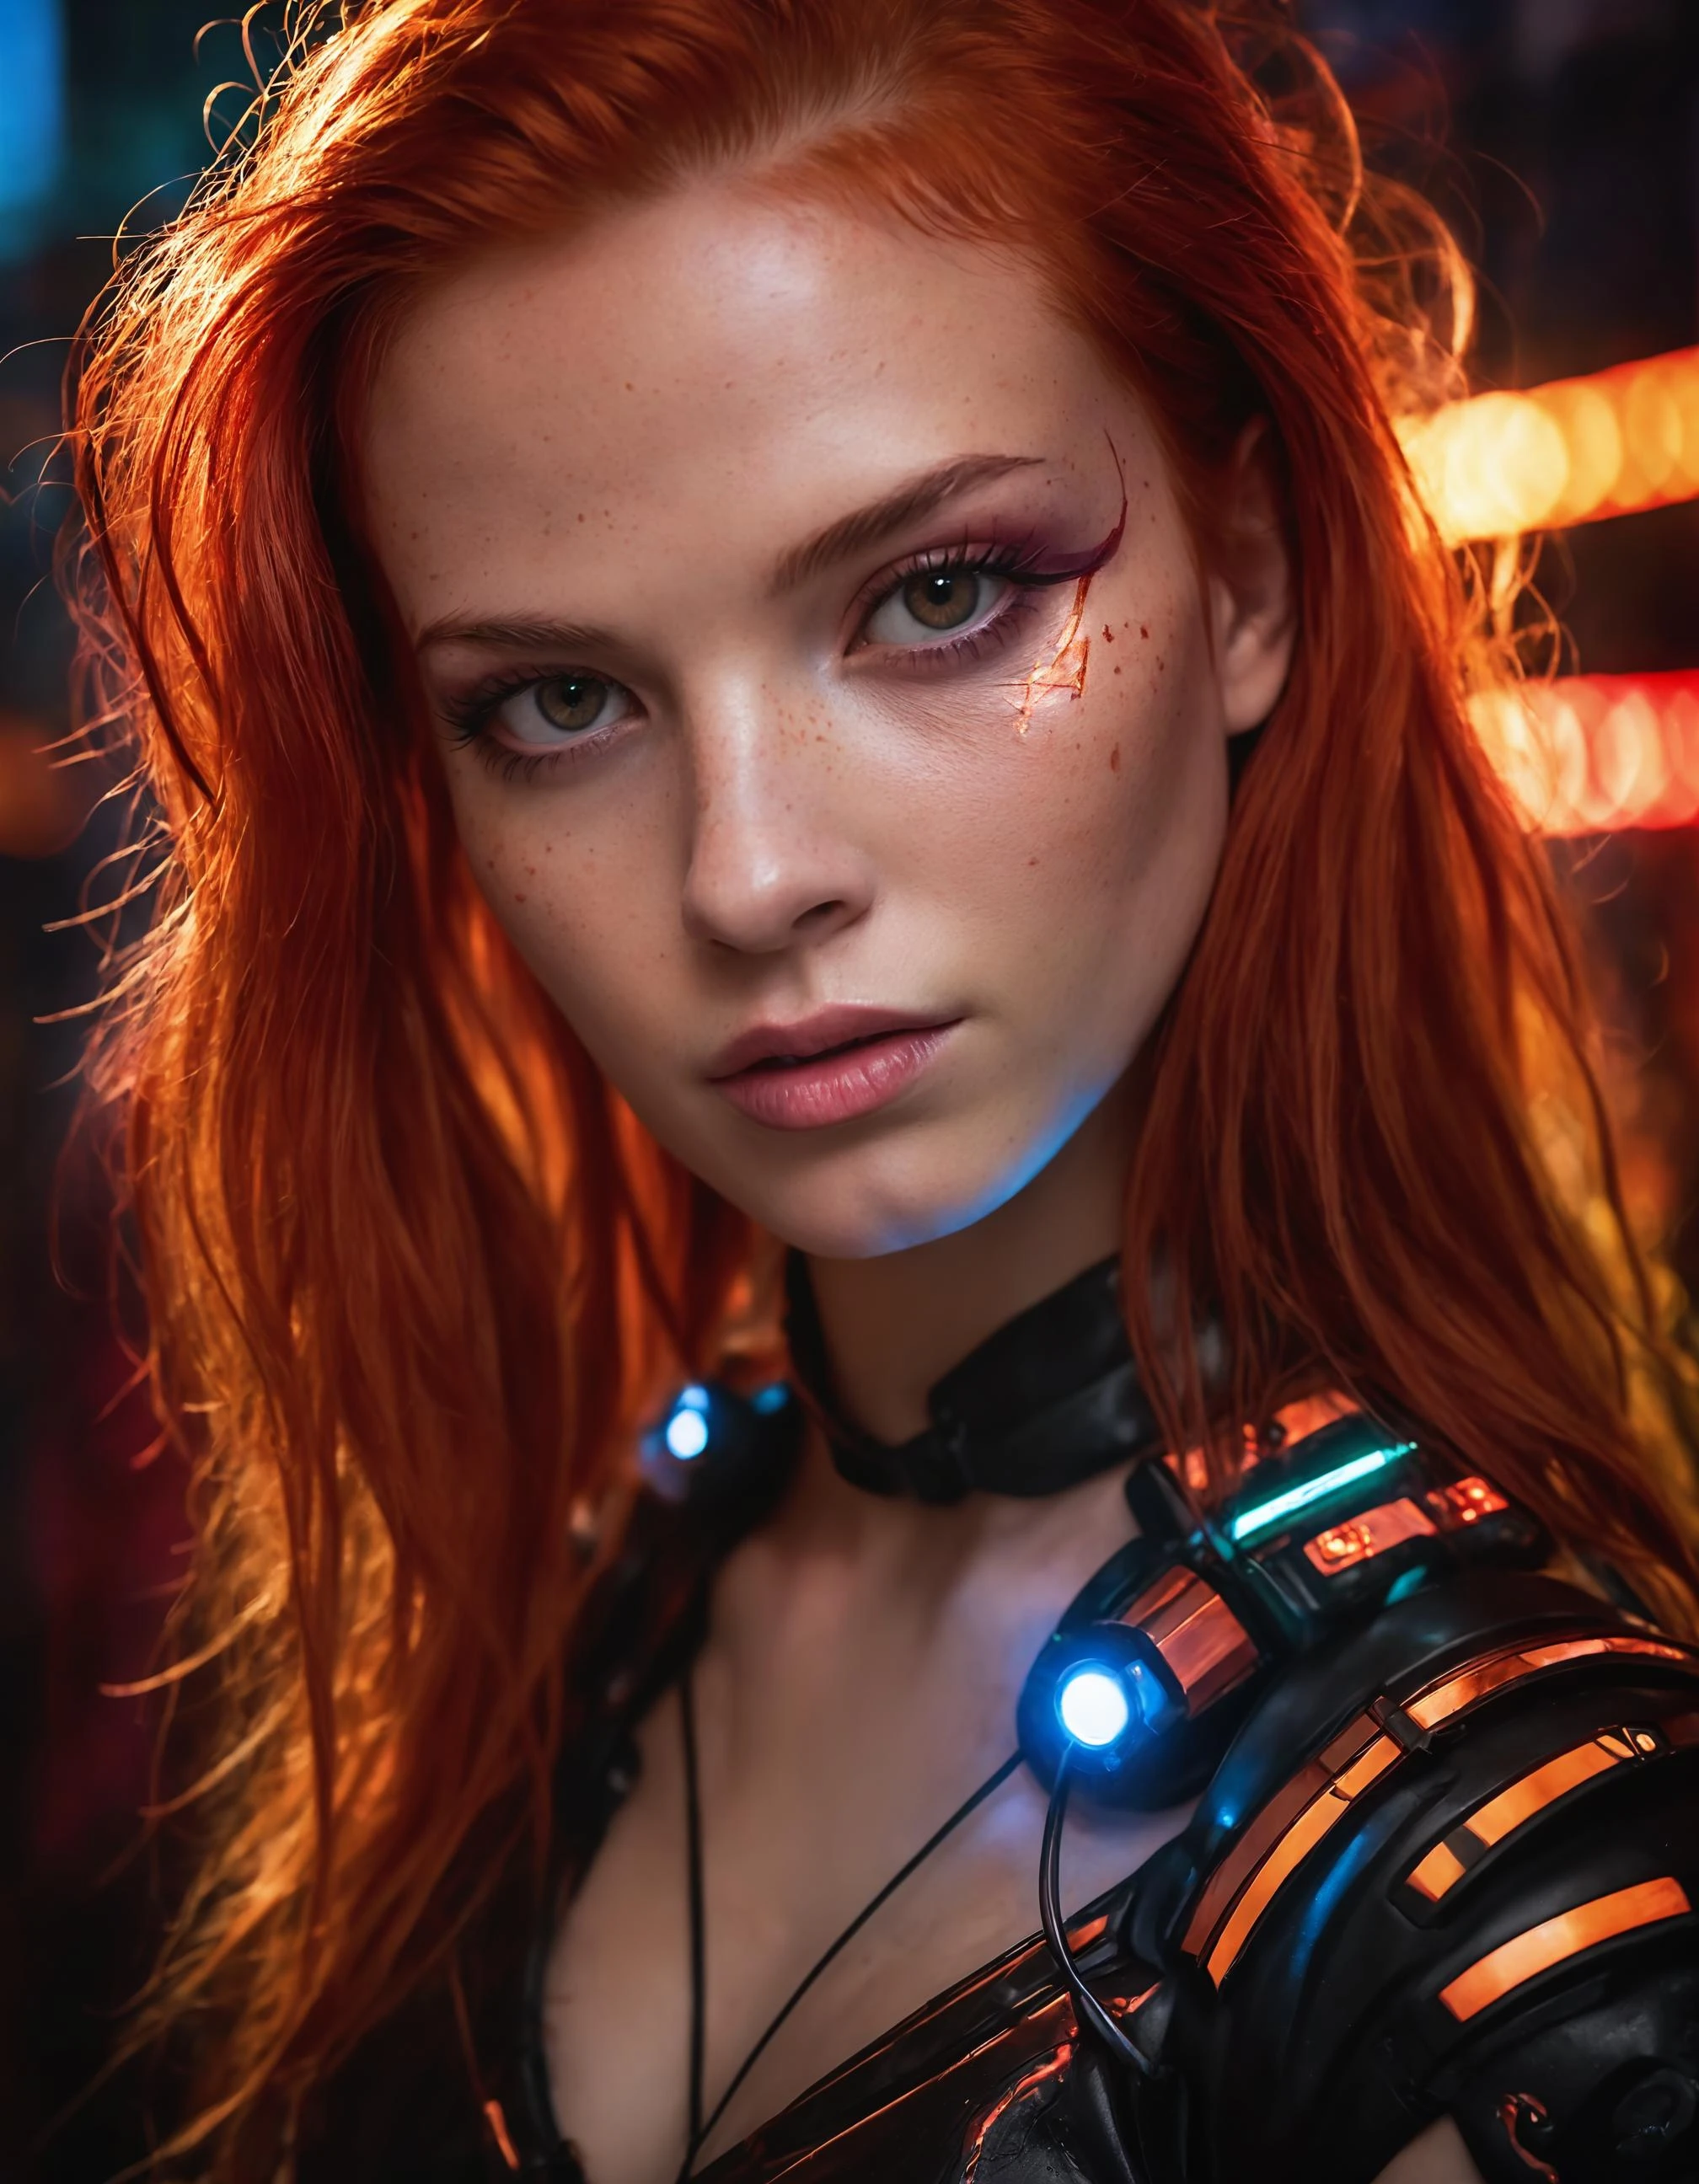 Une photographie capturant l’essence d’une jeune femme cyborg aux cheveux rouge feu. Son visage remplit le cadre, baigné de teintes néon, dégageant détermination et mystère dans un décor futuriste., indéfini